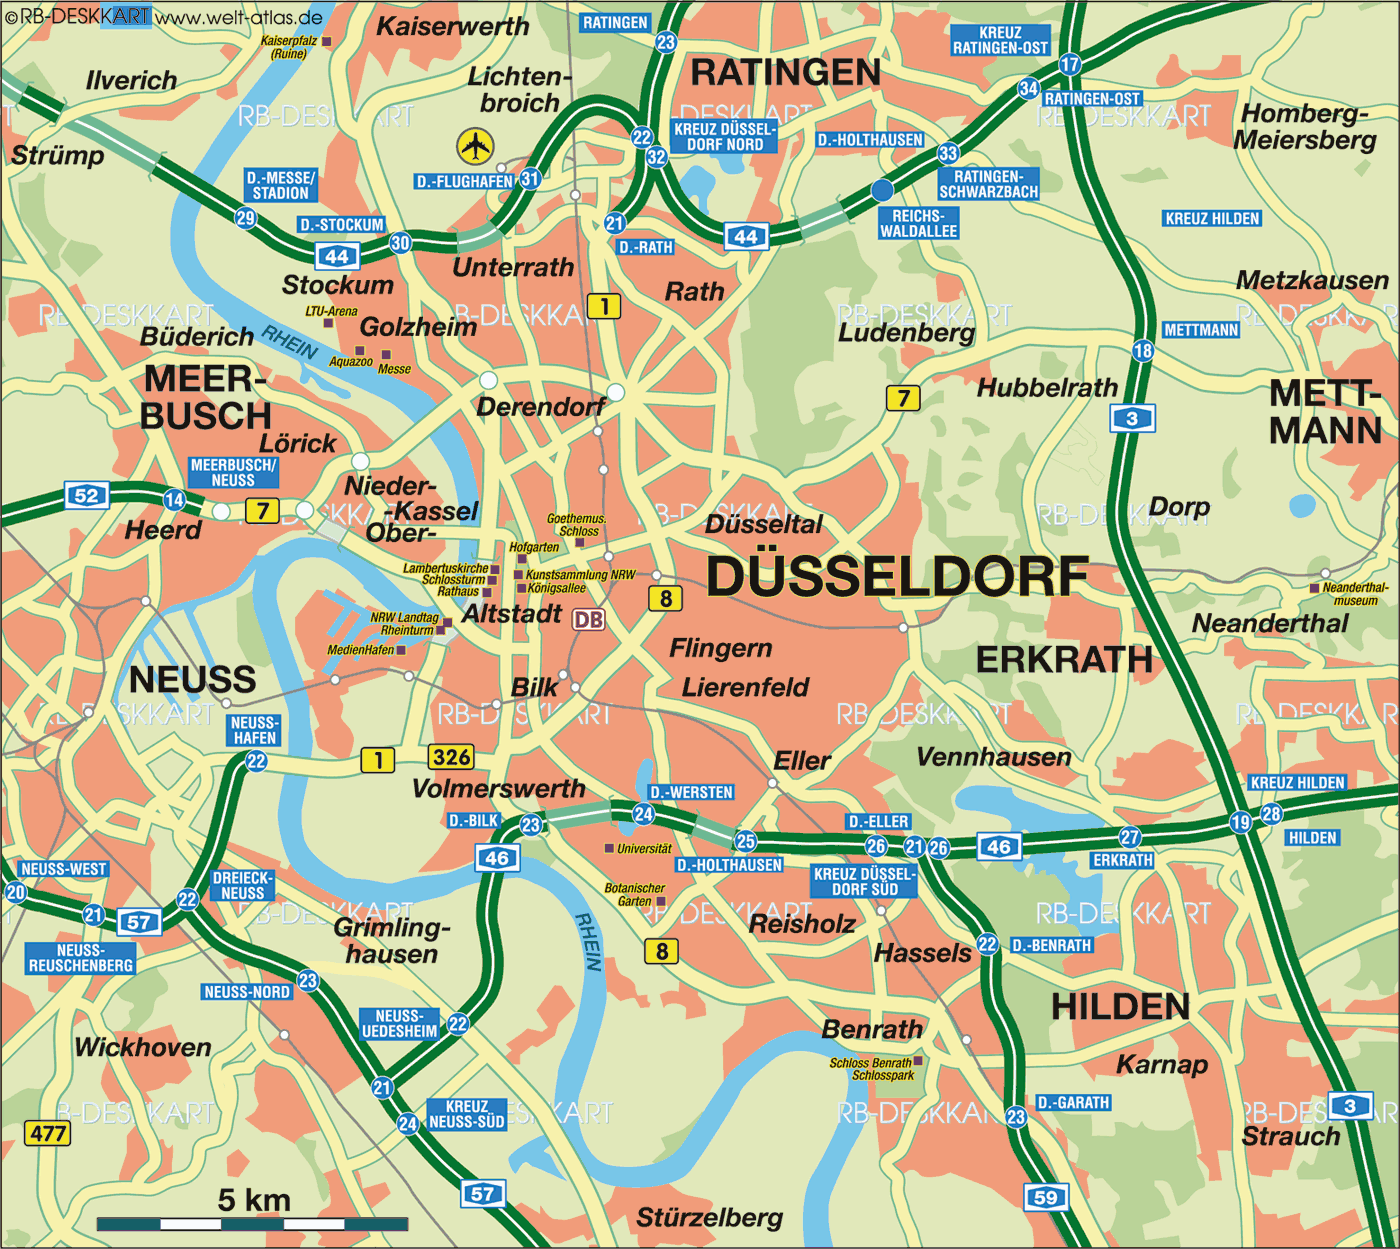 düsseldorf karte Karte Von Dusseldorf Stadt In Deutschland Welt Atlas De düsseldorf karte